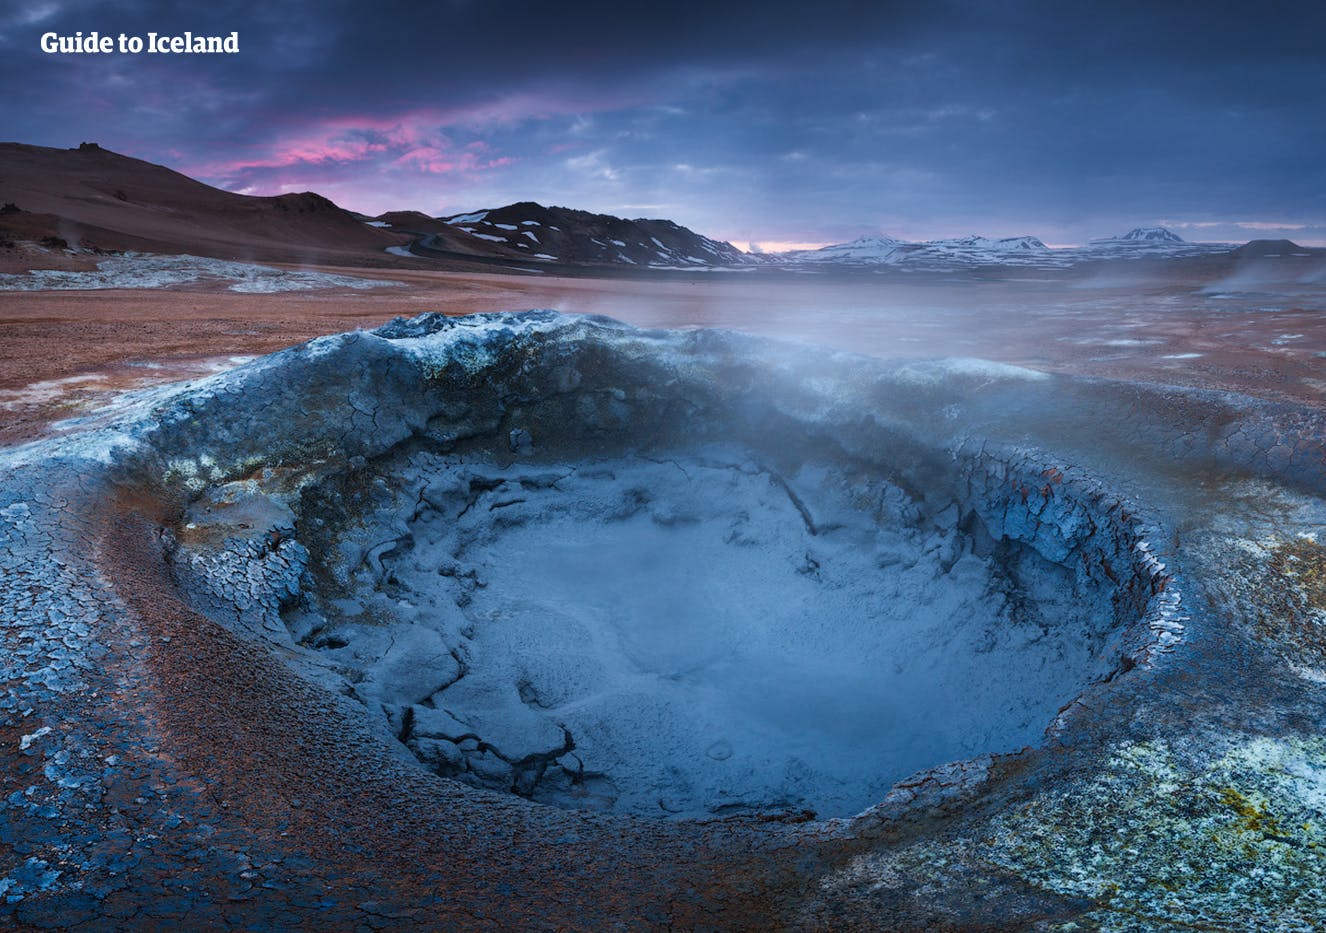 Le pozze di fango e le sorgenti termali nell'area geotermica di Hveravellir, nell'Islanda settentrionale, riempiono l'aria di fumo sulfureo.